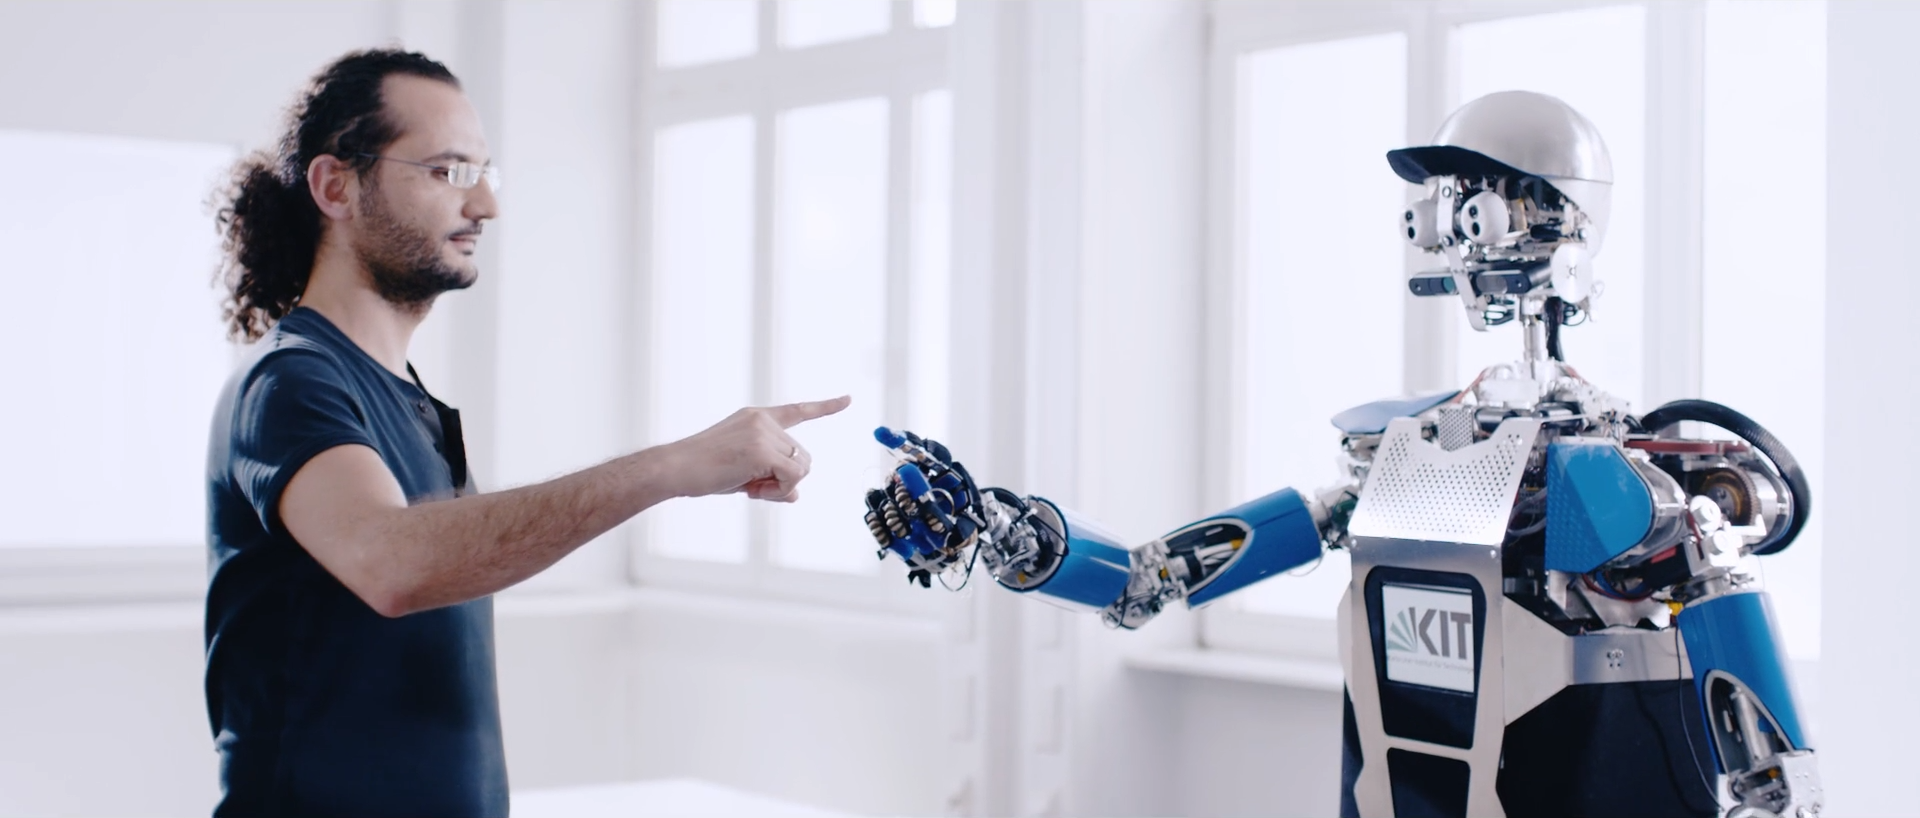 Ein Mensch und ein Roboter strengen die Arme aus und berühren sich fast am Zeigefinger